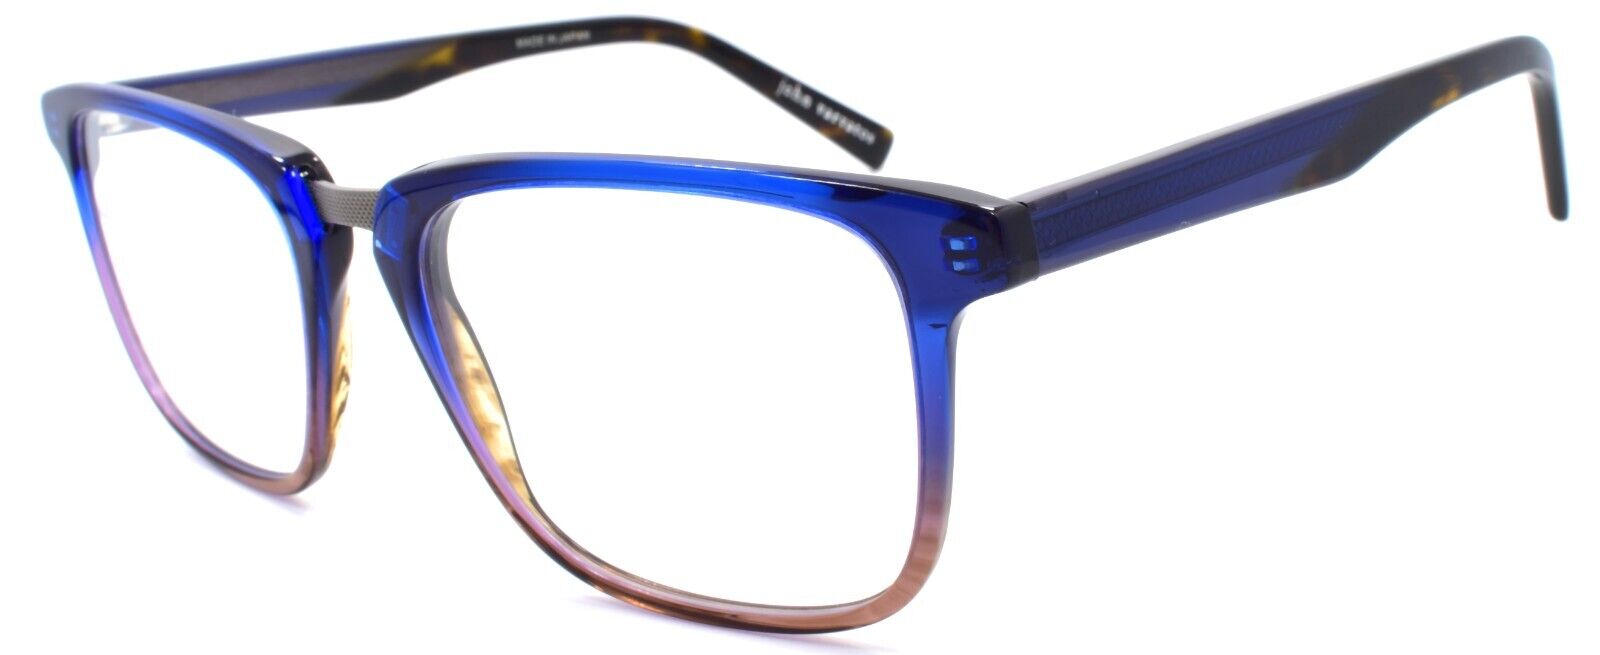 1-John Varvatos V373 Men's Eyeglasses Frames 54-19-145 Navy Gradient Japan-751286306149-IKSpecs